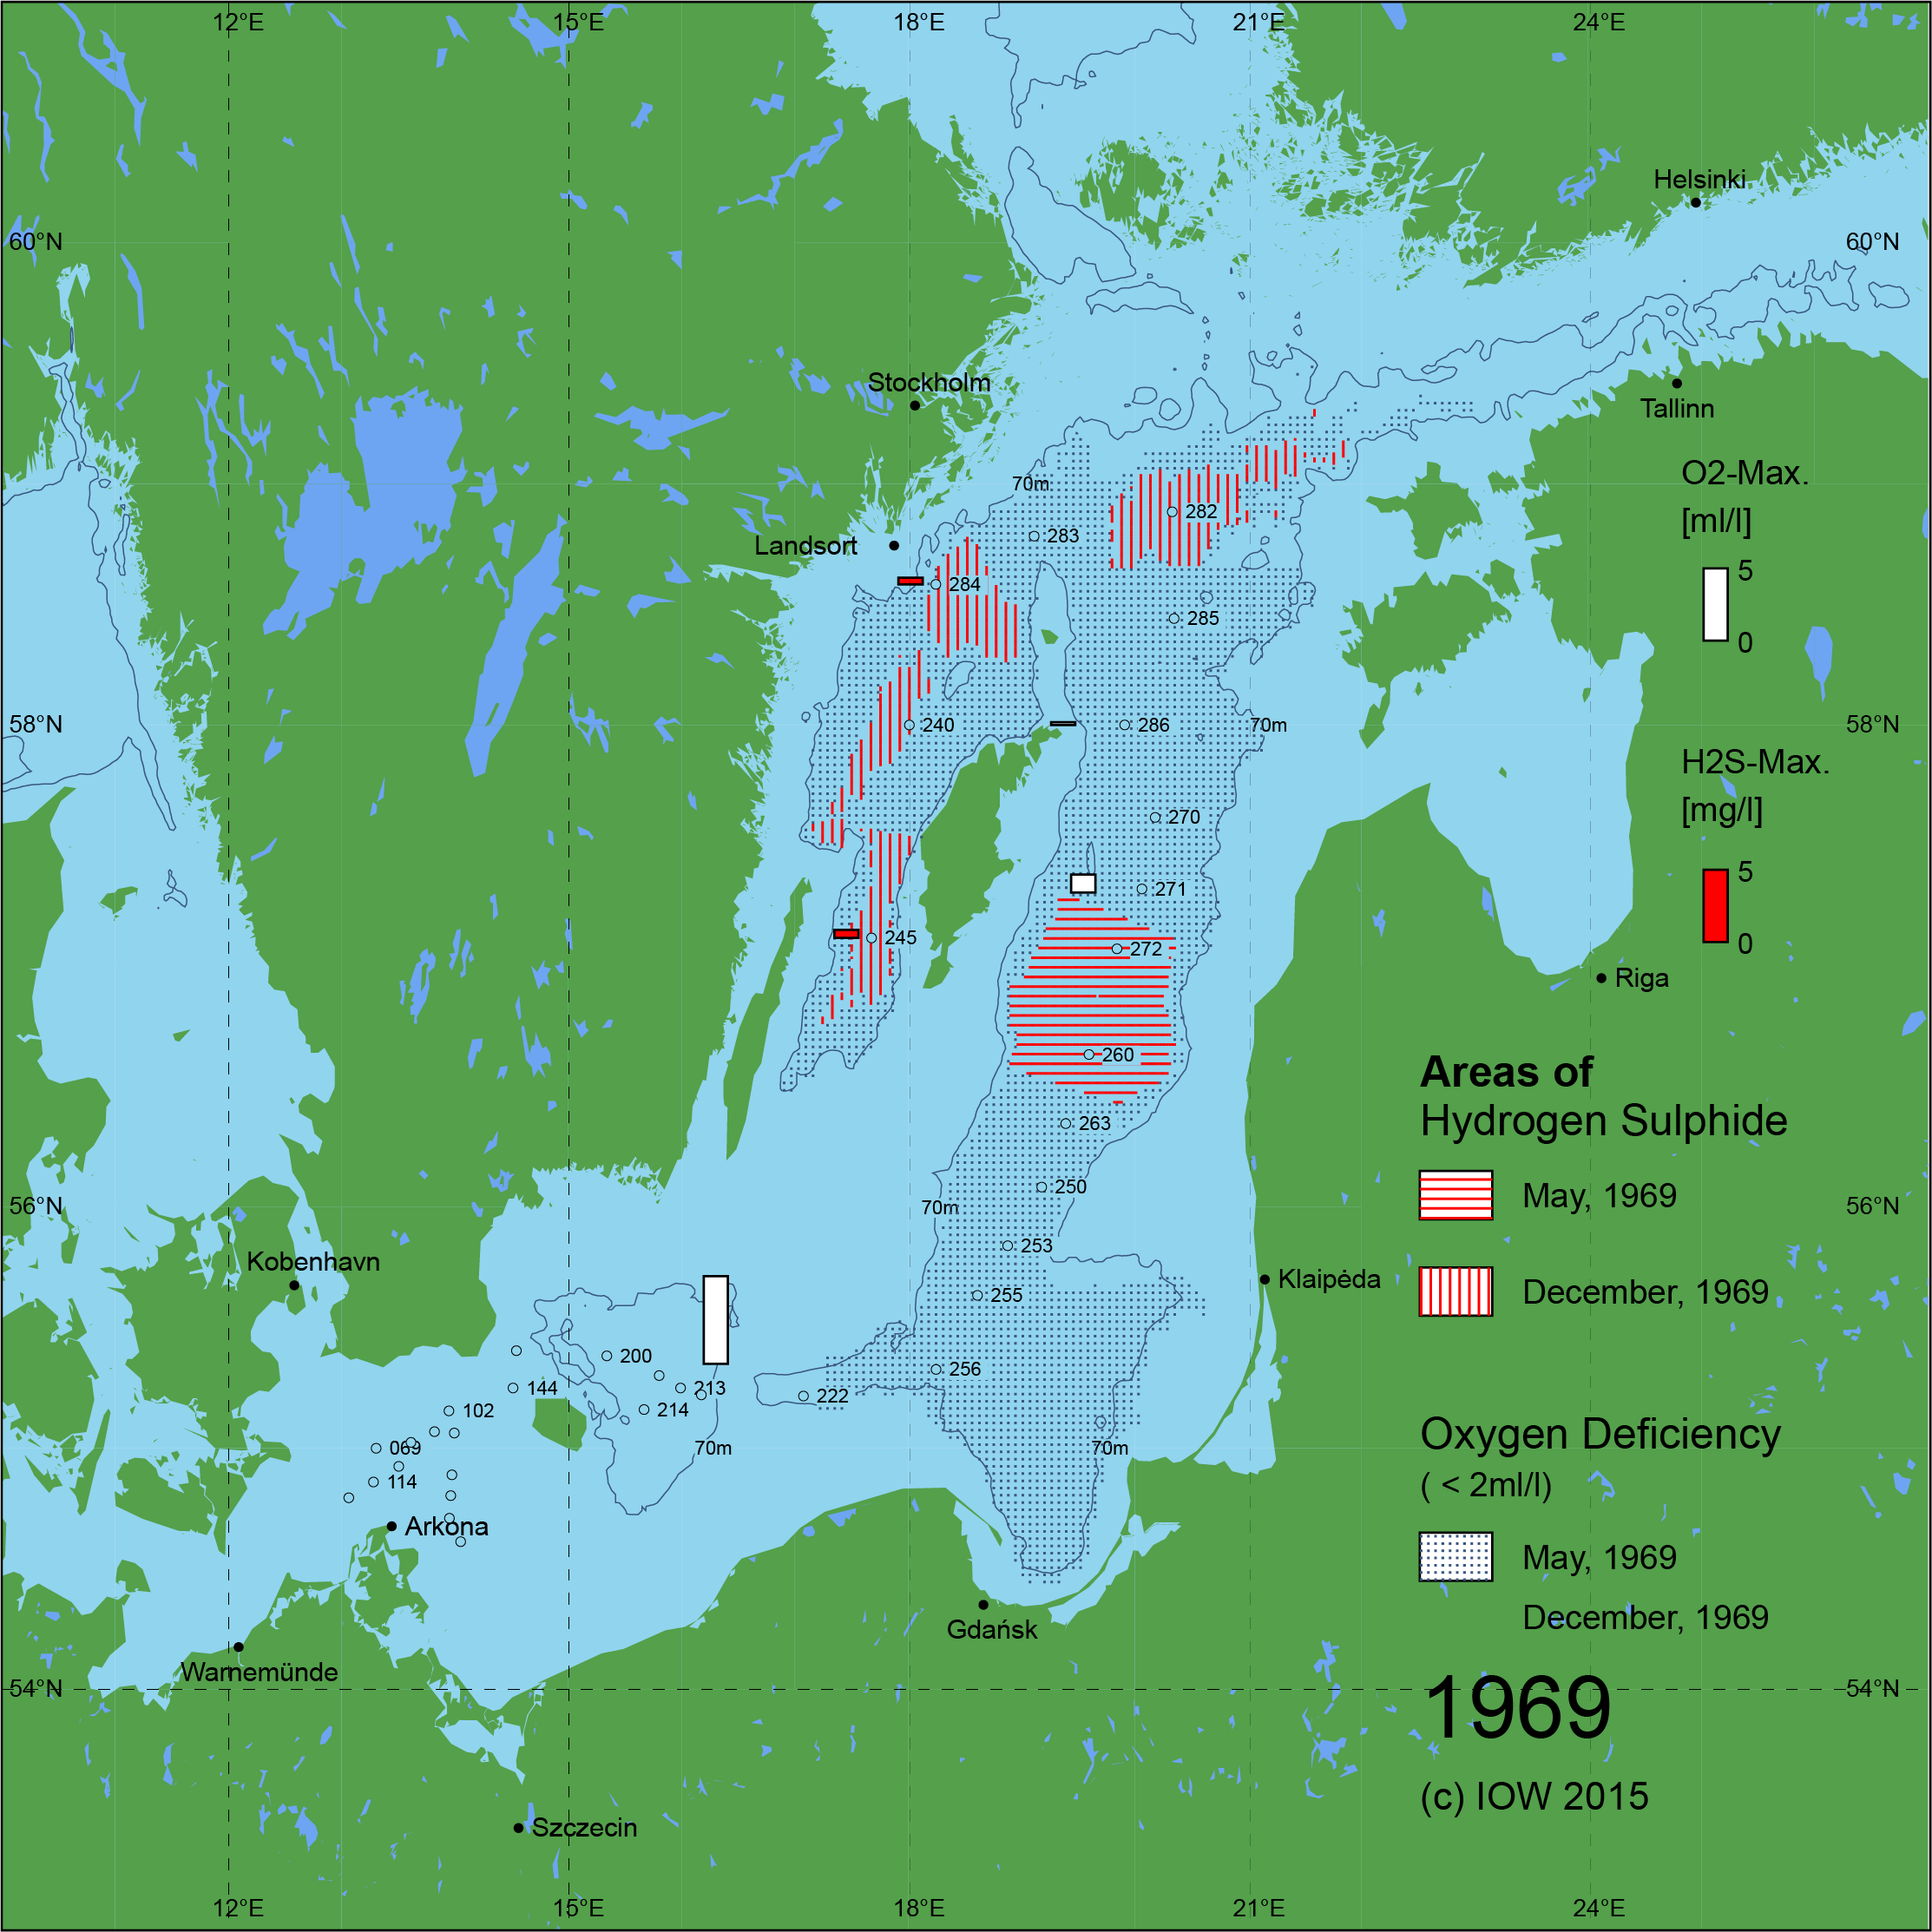 Sauerstoffarme und sauerstofffreie Gebiete in der Ostsee - 1969